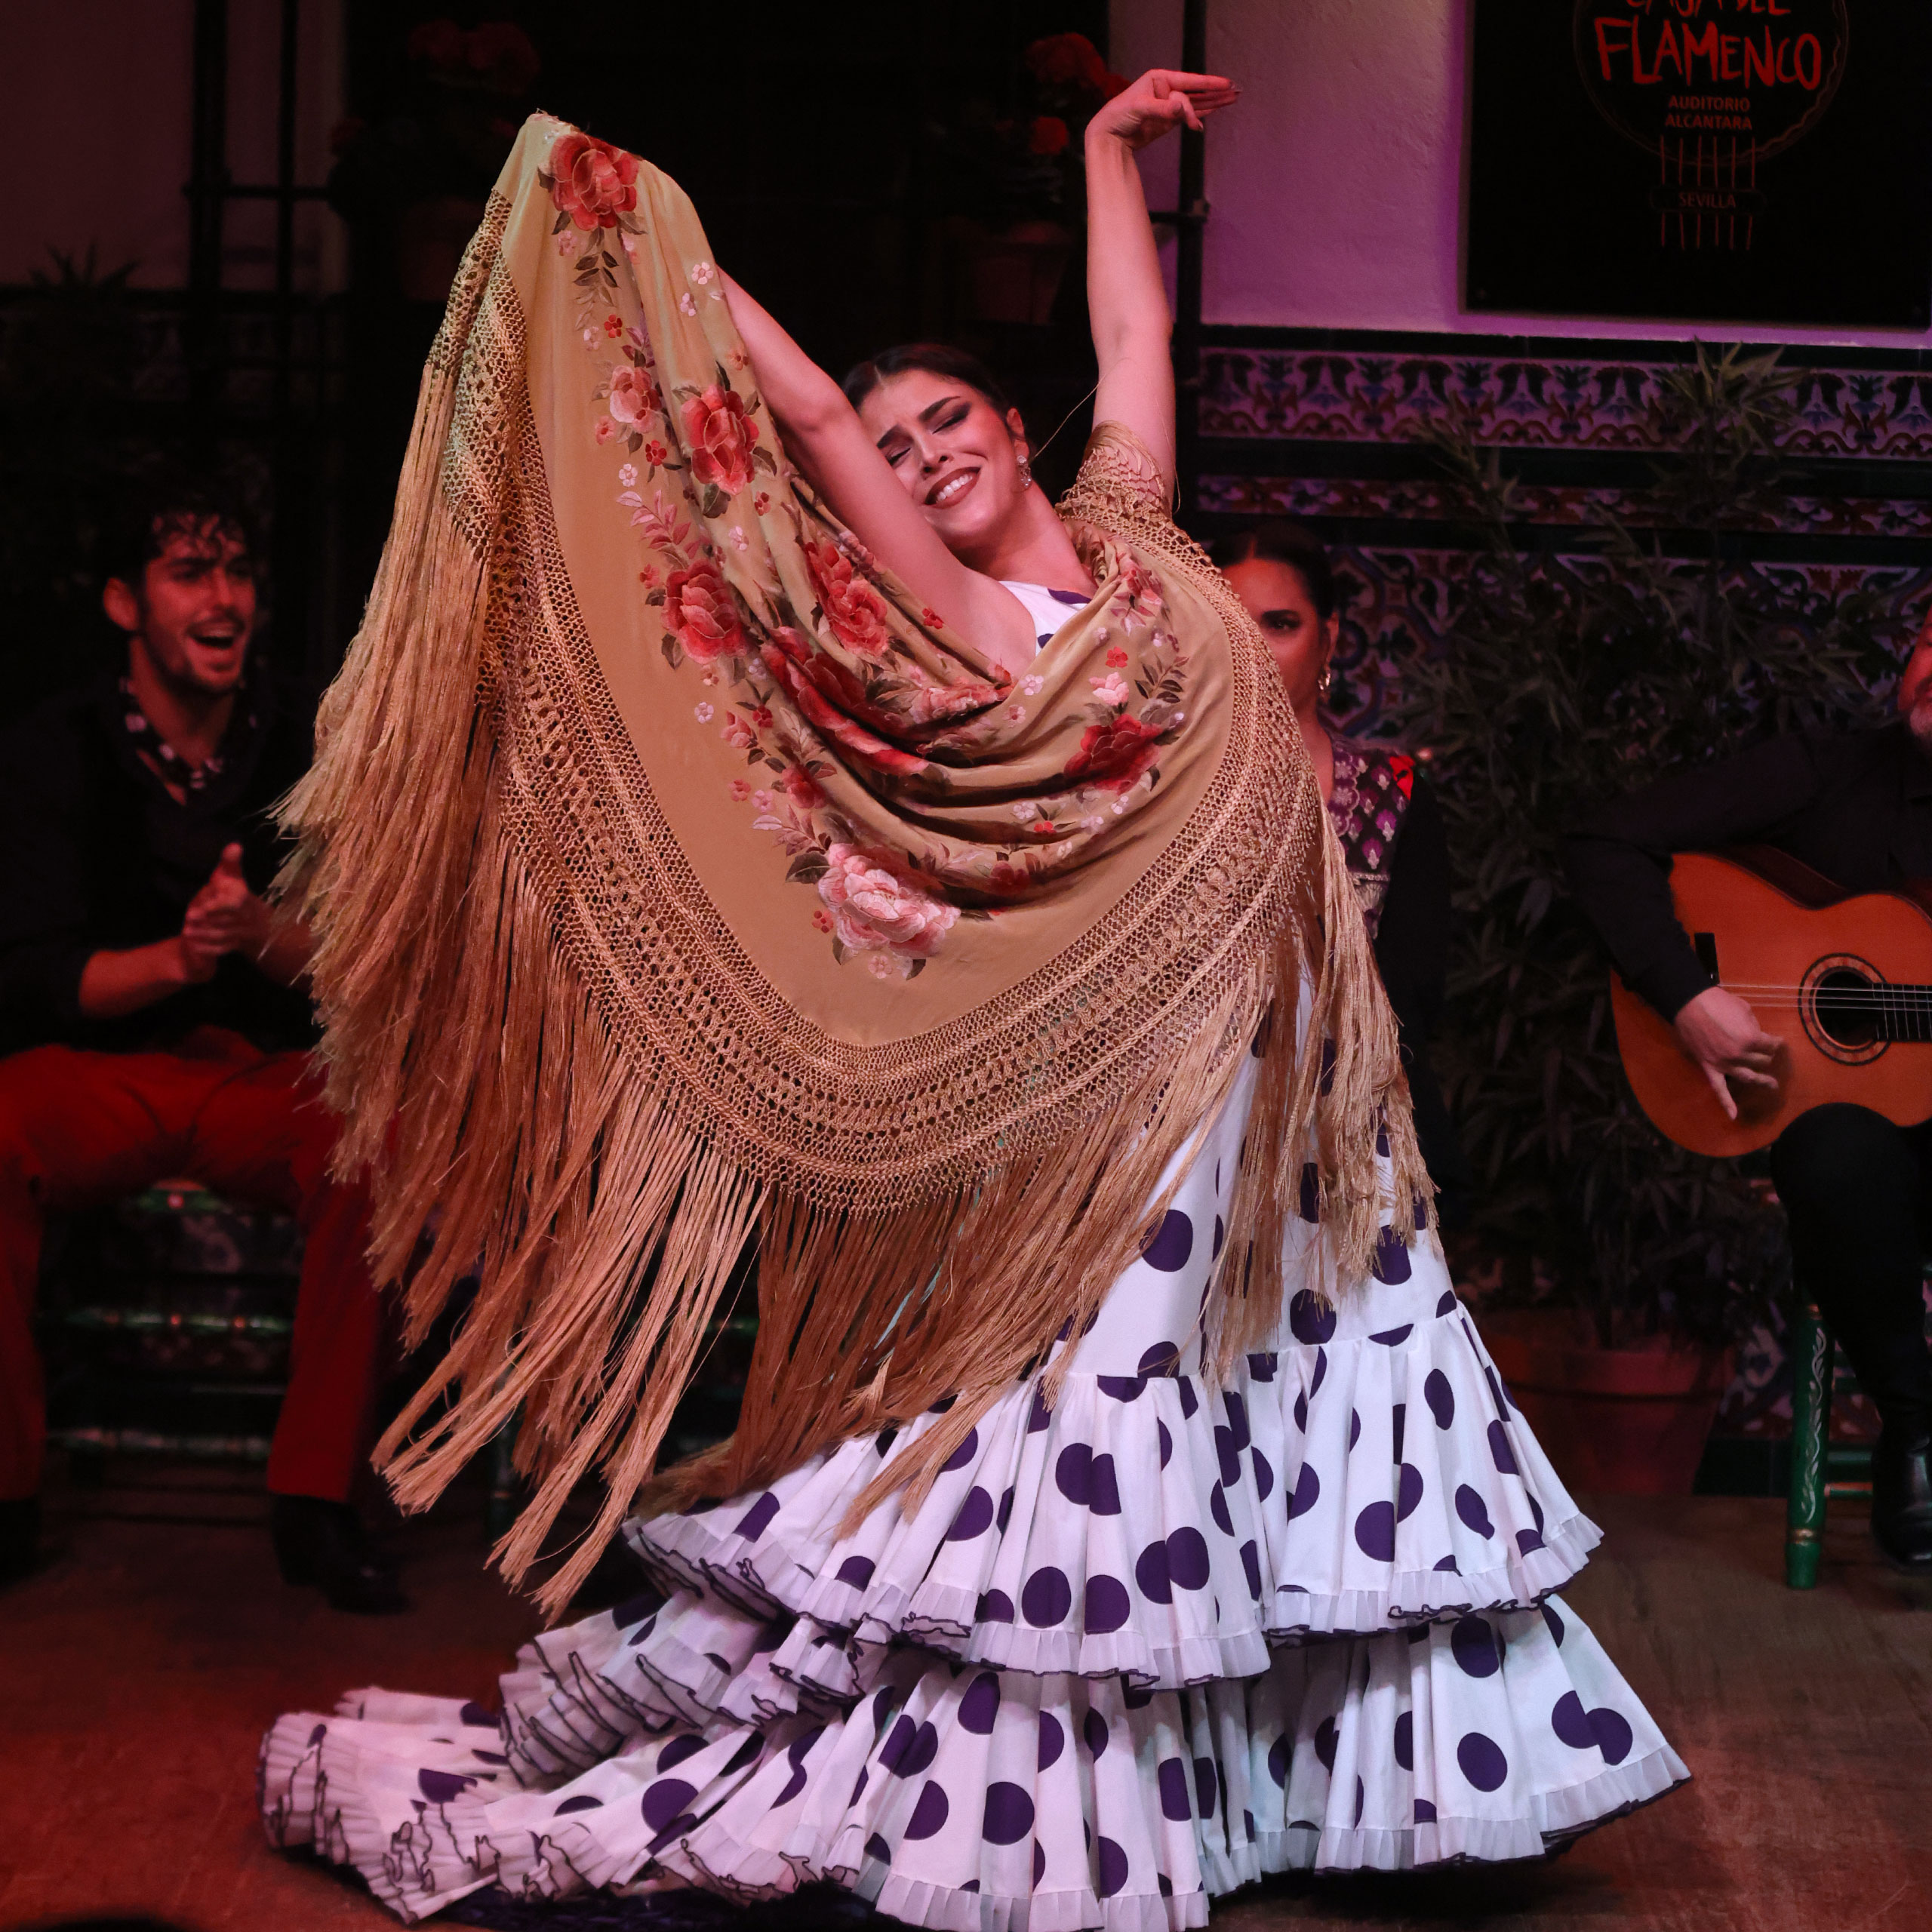 Araceli munoz flamenco lacasadelflamencosevilla